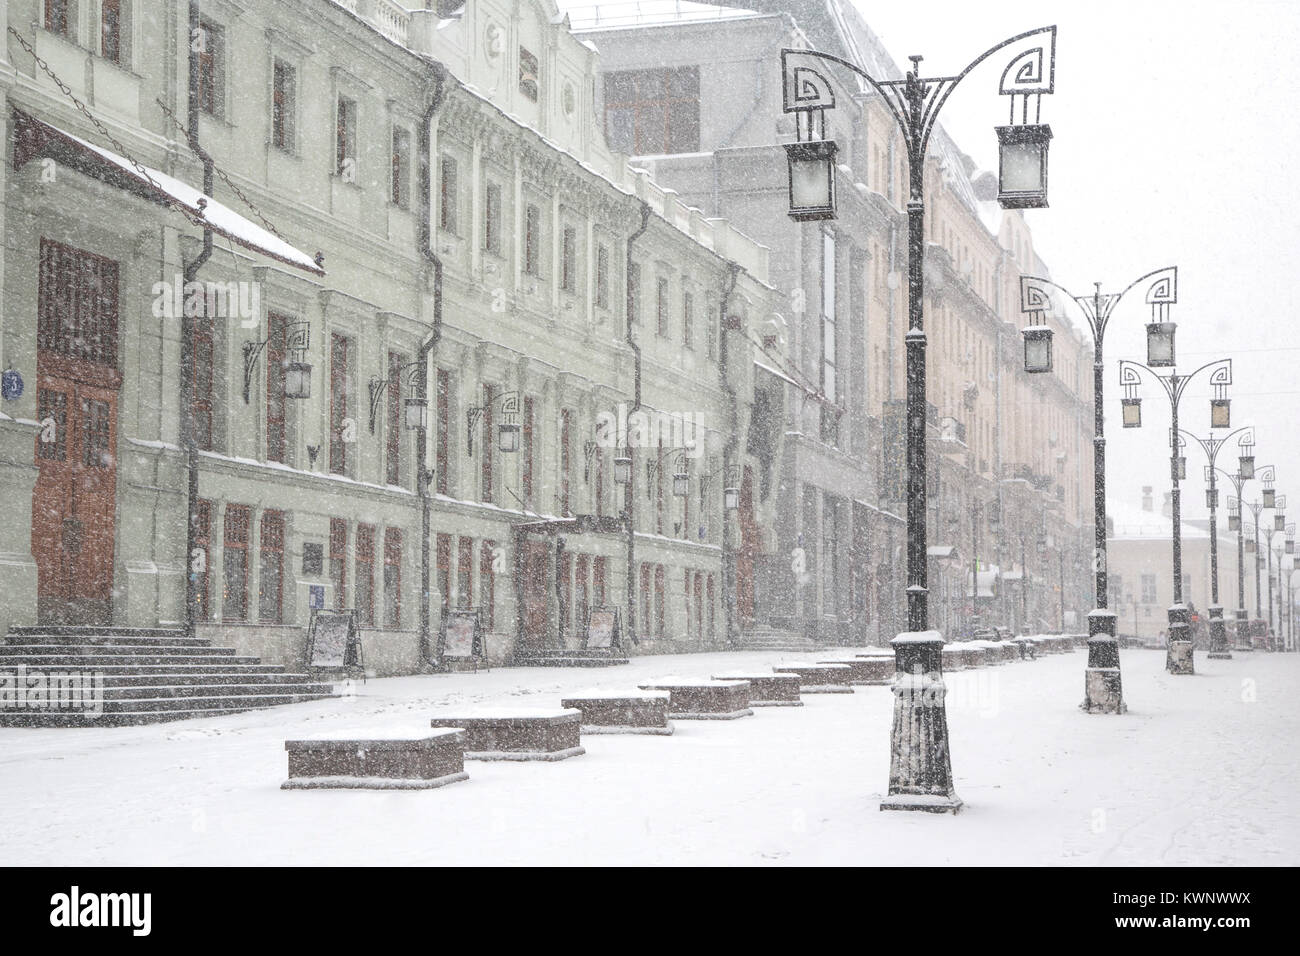 Vue sur le bâtiment du Théâtre des Arts de Moscou et Kamergersky lane au cours de neige anormale au centre de Moscou, Russie Banque D'Images